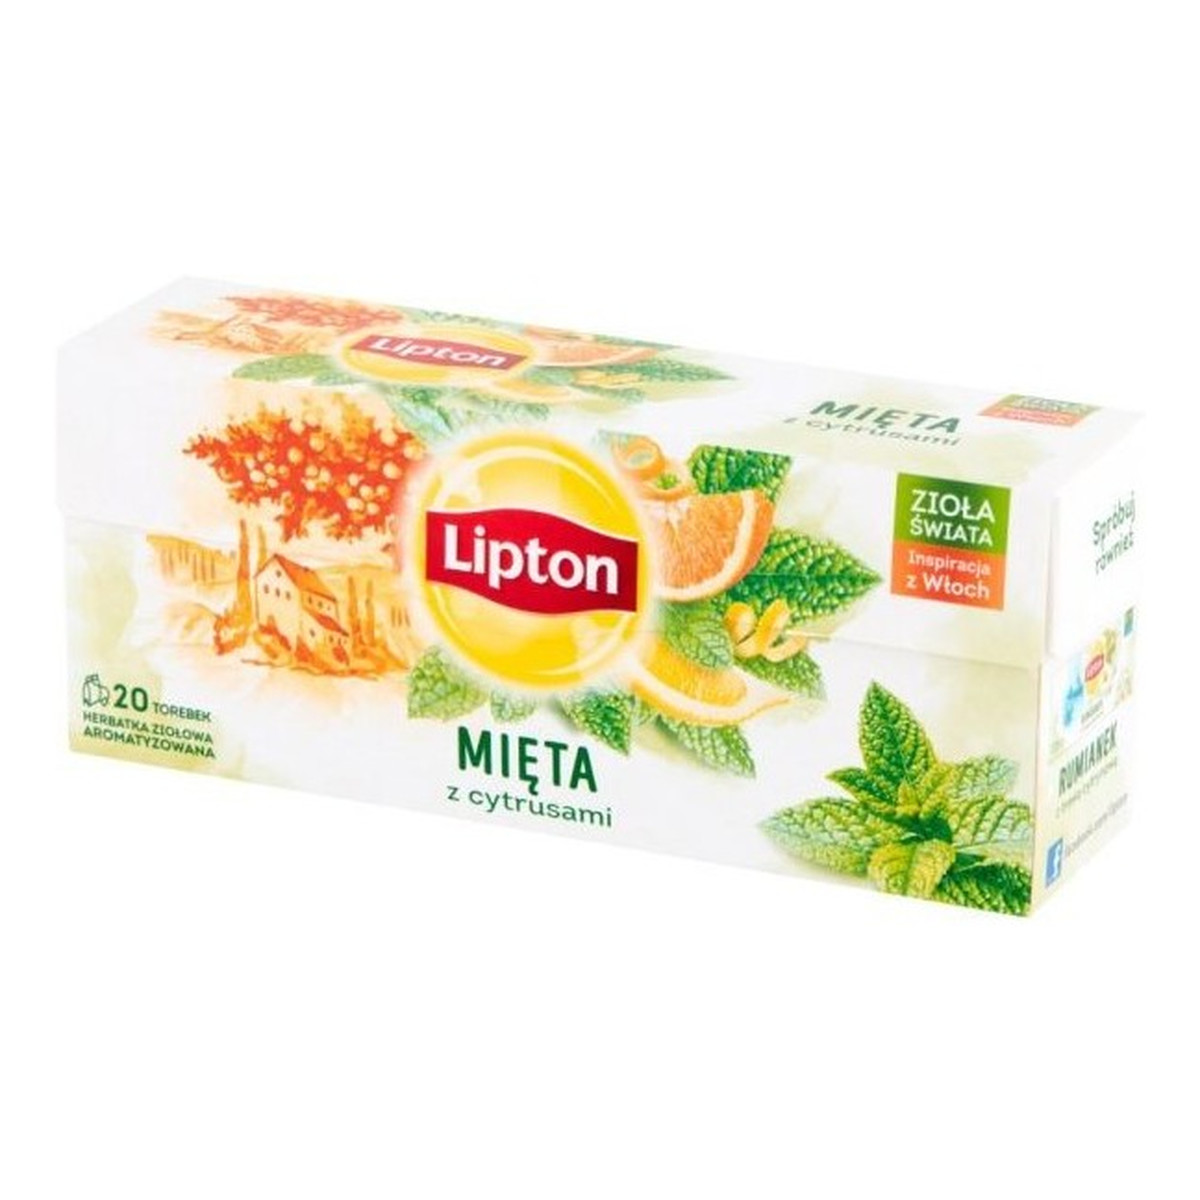 Lipton Herbatka ziołowa aromatyzowana mięta z cytrusami 20 torebek 26g